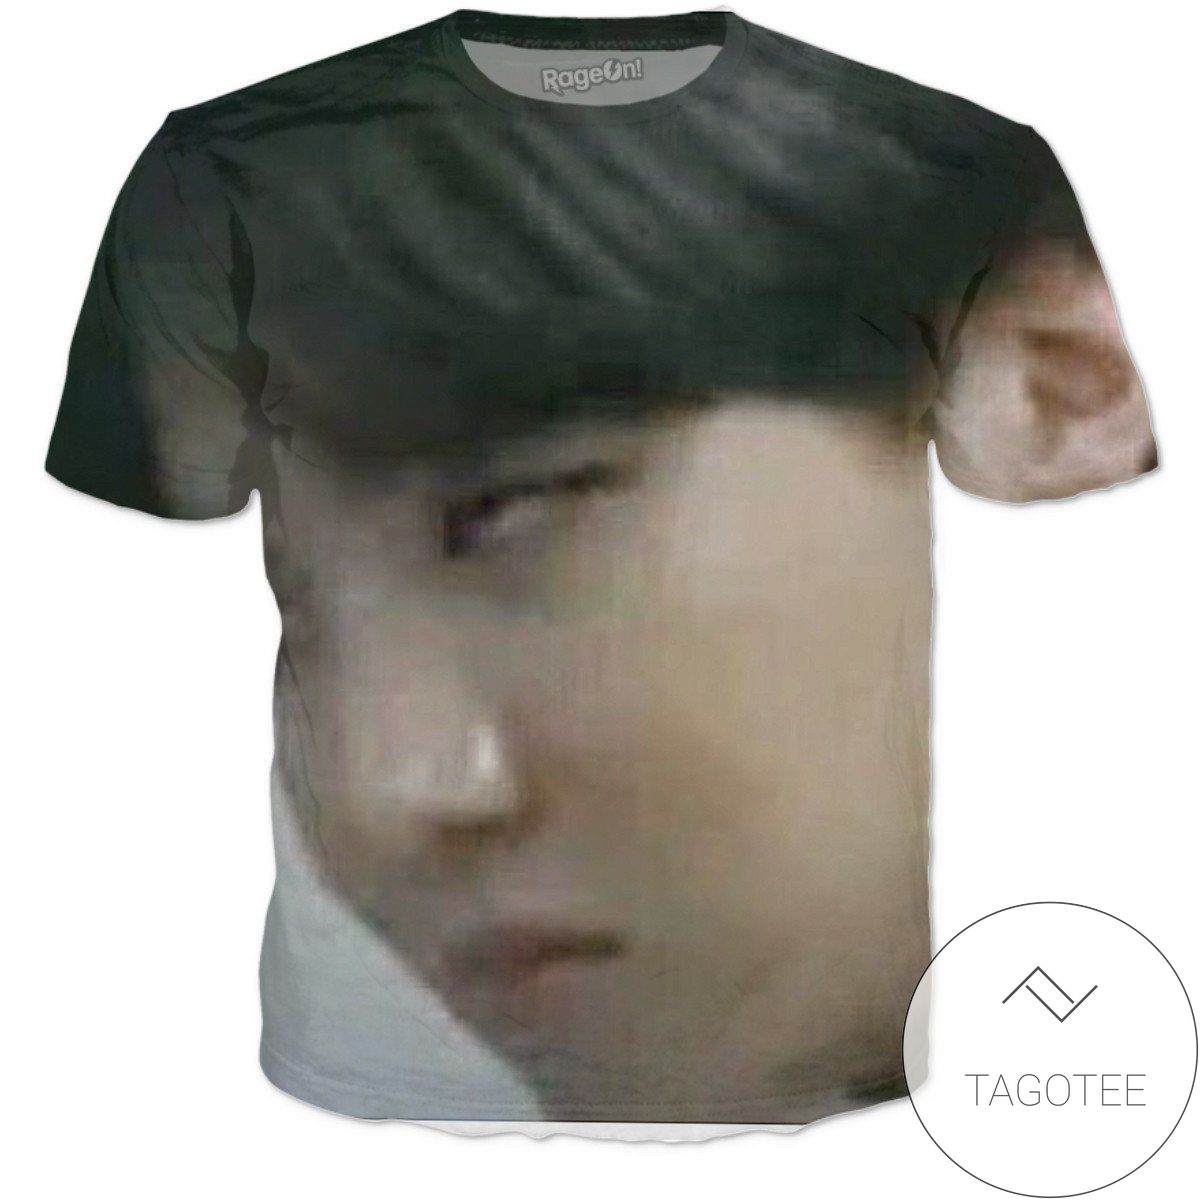 Rageon J-hope Sass Face All Over Print T-shirt